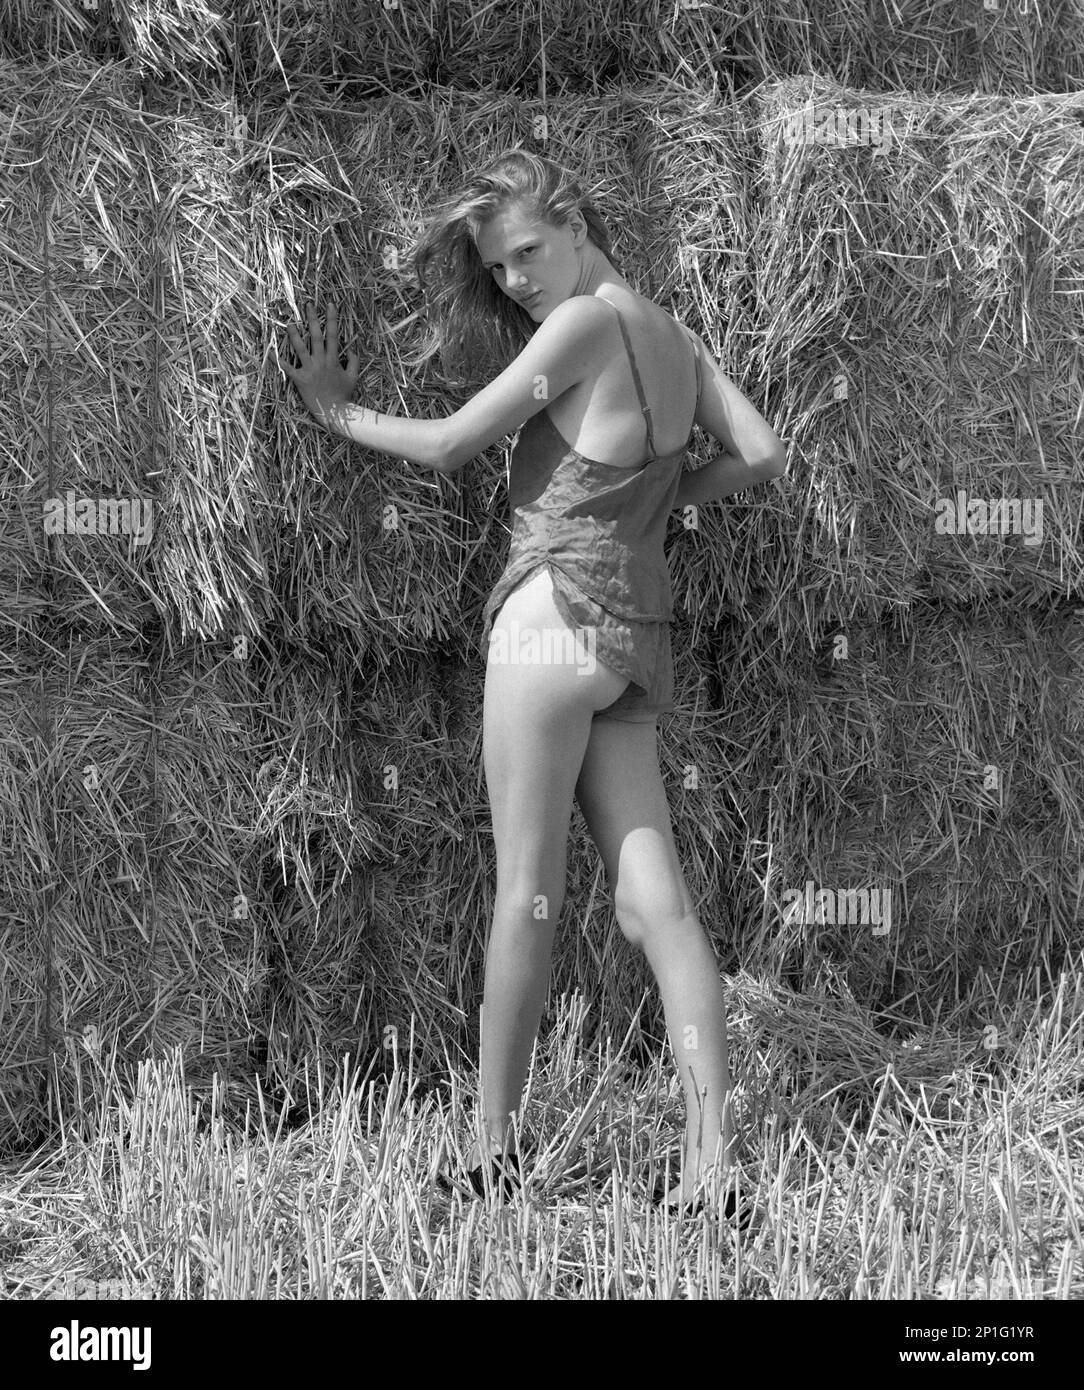 Junge, hübsche, blonde Frau in Unterwäsche, die für ein Porträt posiert, im Heuballen-Stack Landside 1990er england uk Stockfoto